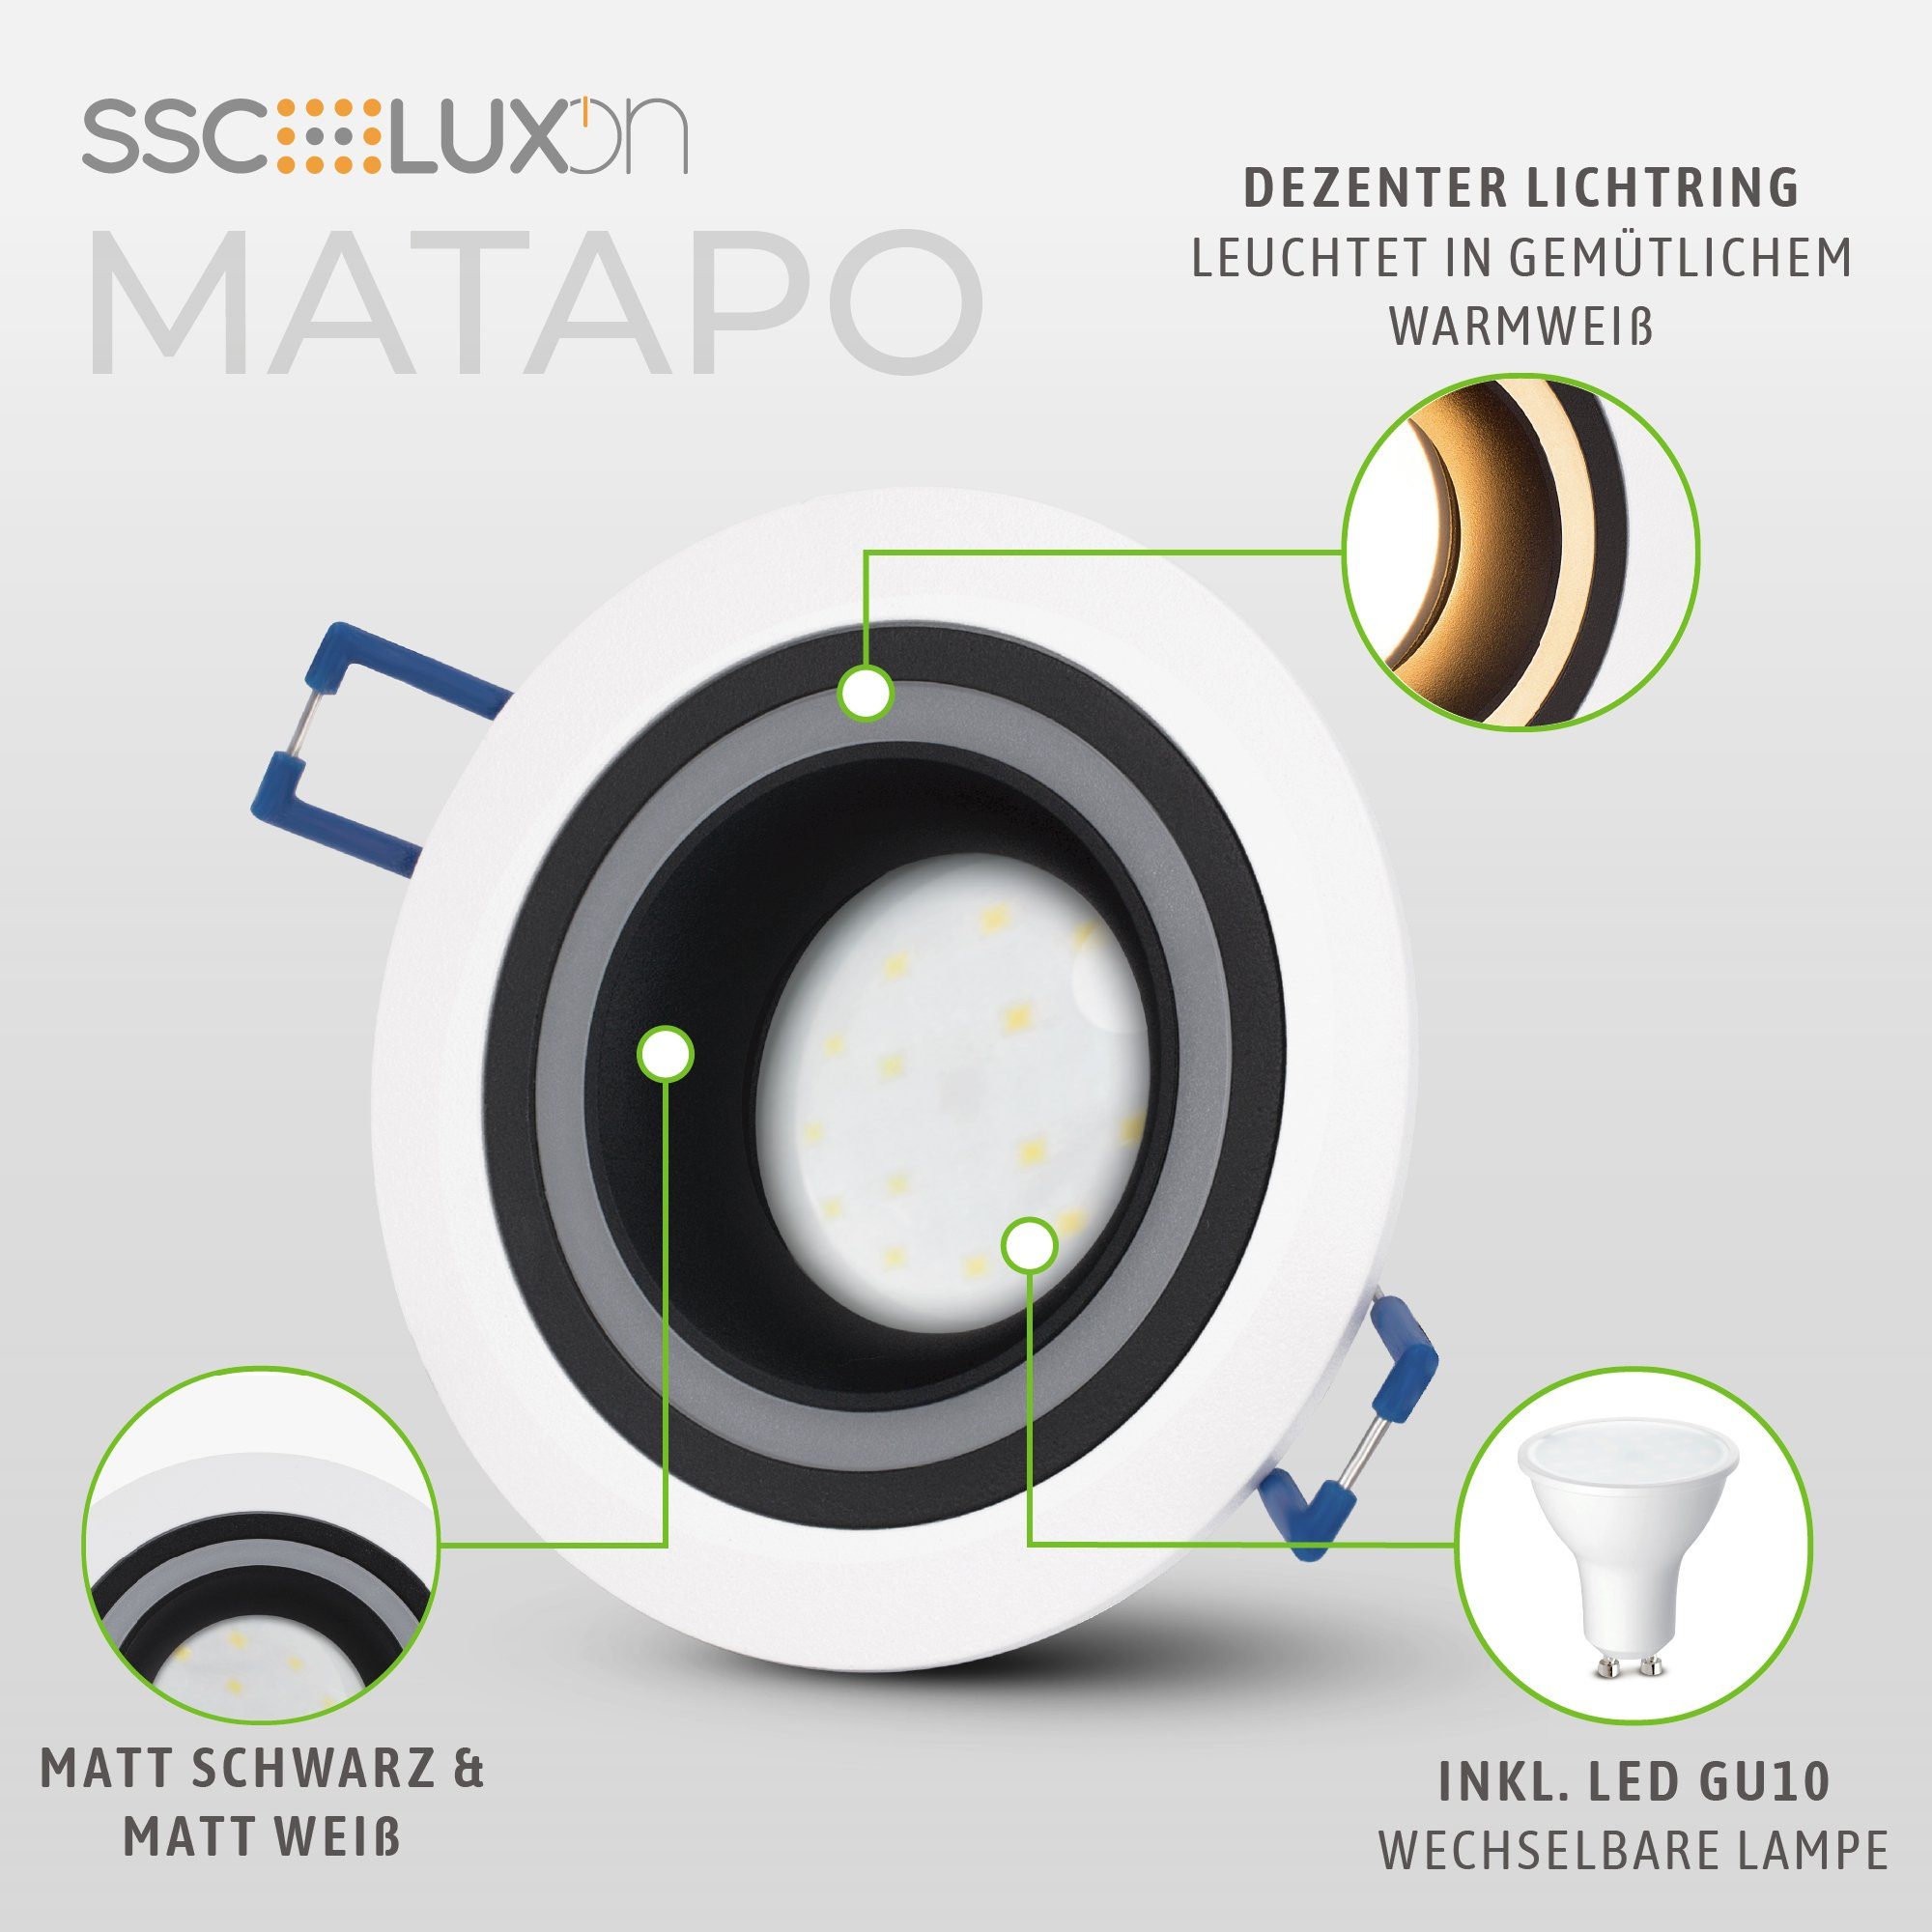 Design Einbauleuchte LED Warmweiß Matapo SSC-LUXon Leuchtmittel LED weiss 5W, schwarz Einbaustrahler GU10